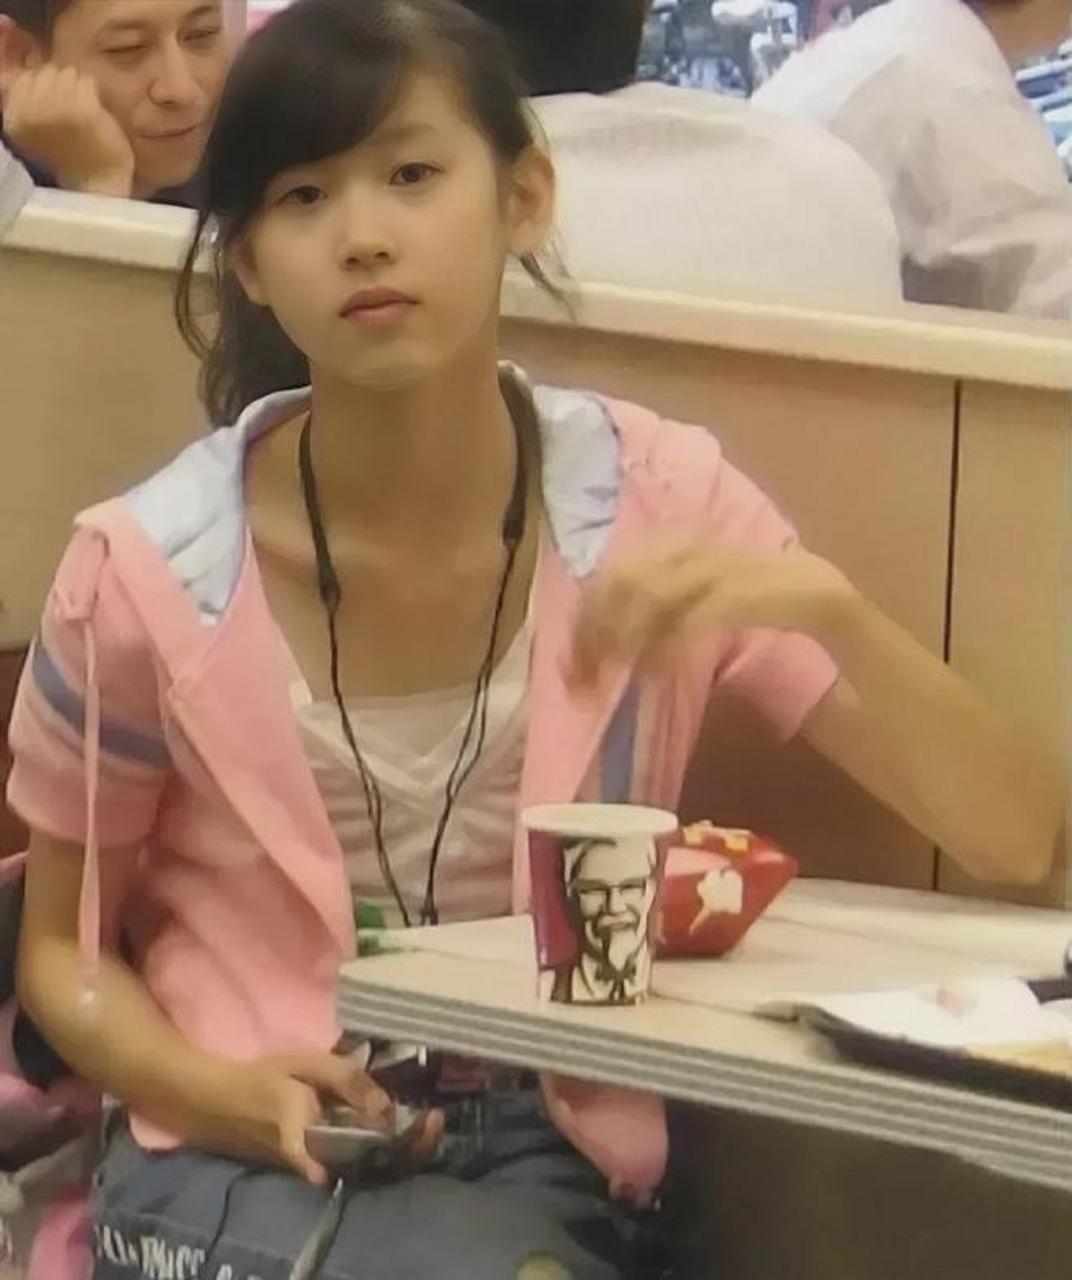 2008年,15岁的奶茶妹妹章泽天的照片,此时她正在吃肯德基,画面中她穿